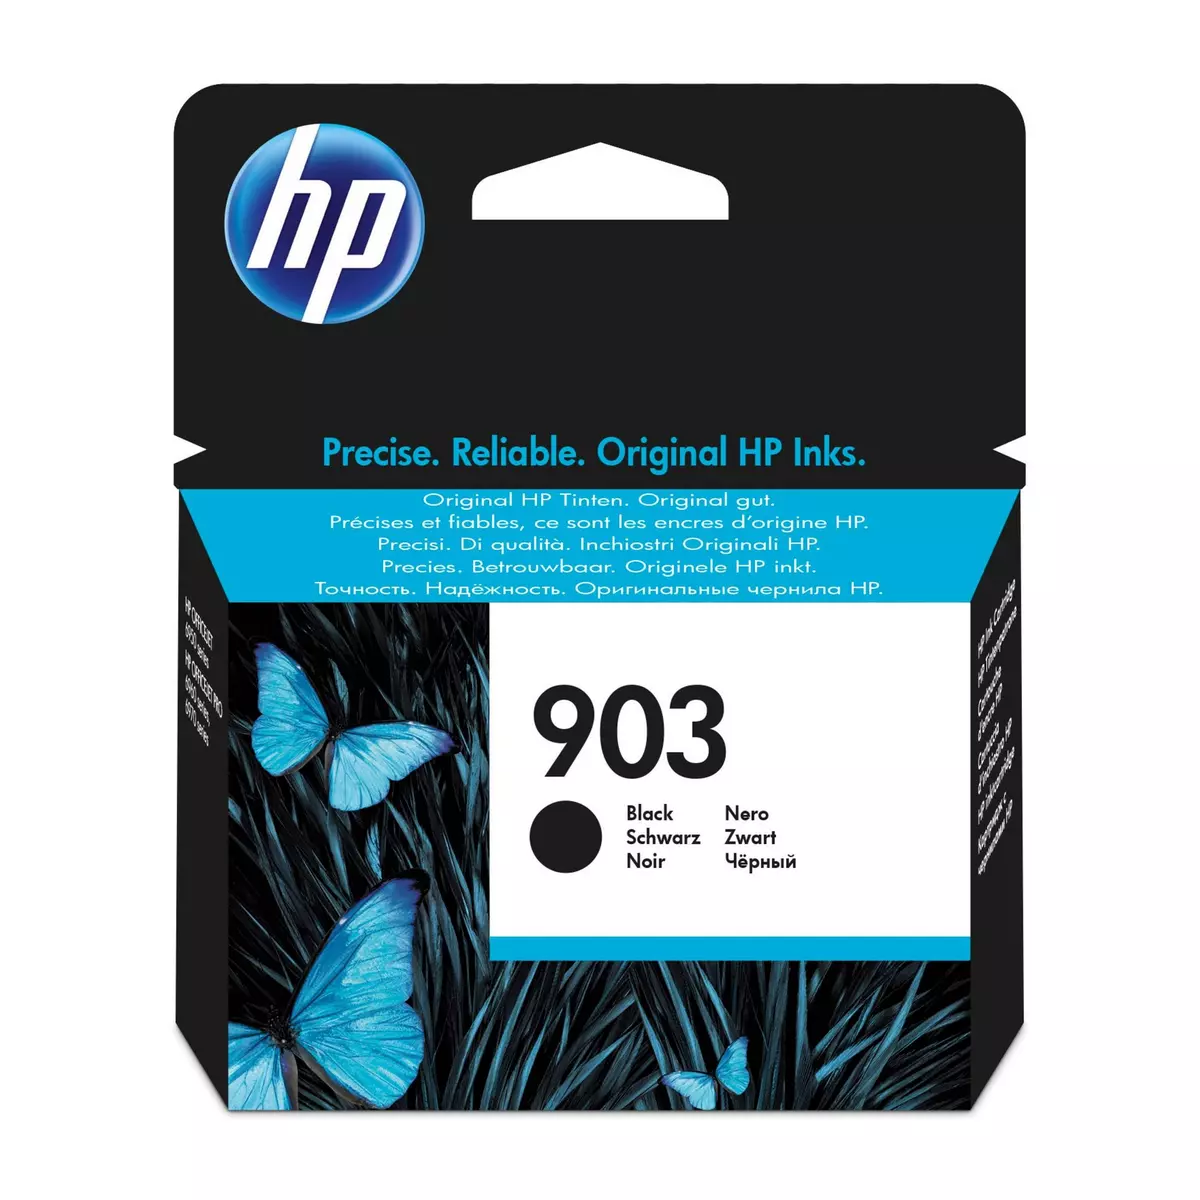 HP Cartouche d'Encre HP 903 Noire Authentique (T6L99AE) pour HP OfficeJet  6950, HP OfficeJet Pro 6960 / 6970 pas cher 